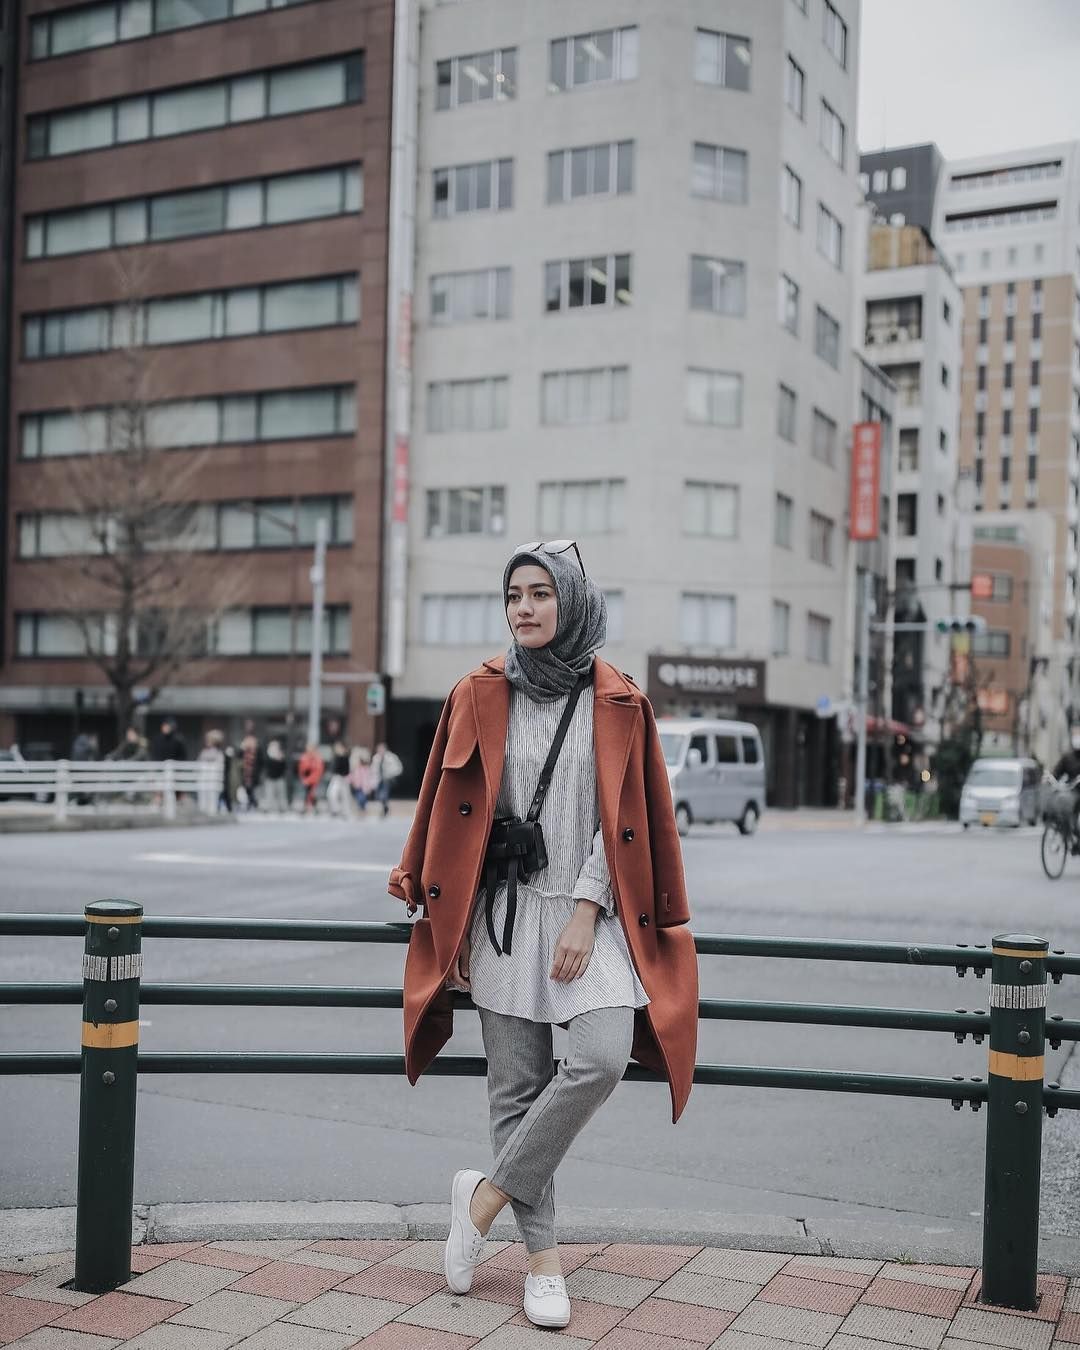 12 Gaya Foto Kekinian Mega Iskanti Tampil Cantik Dengan Hijab